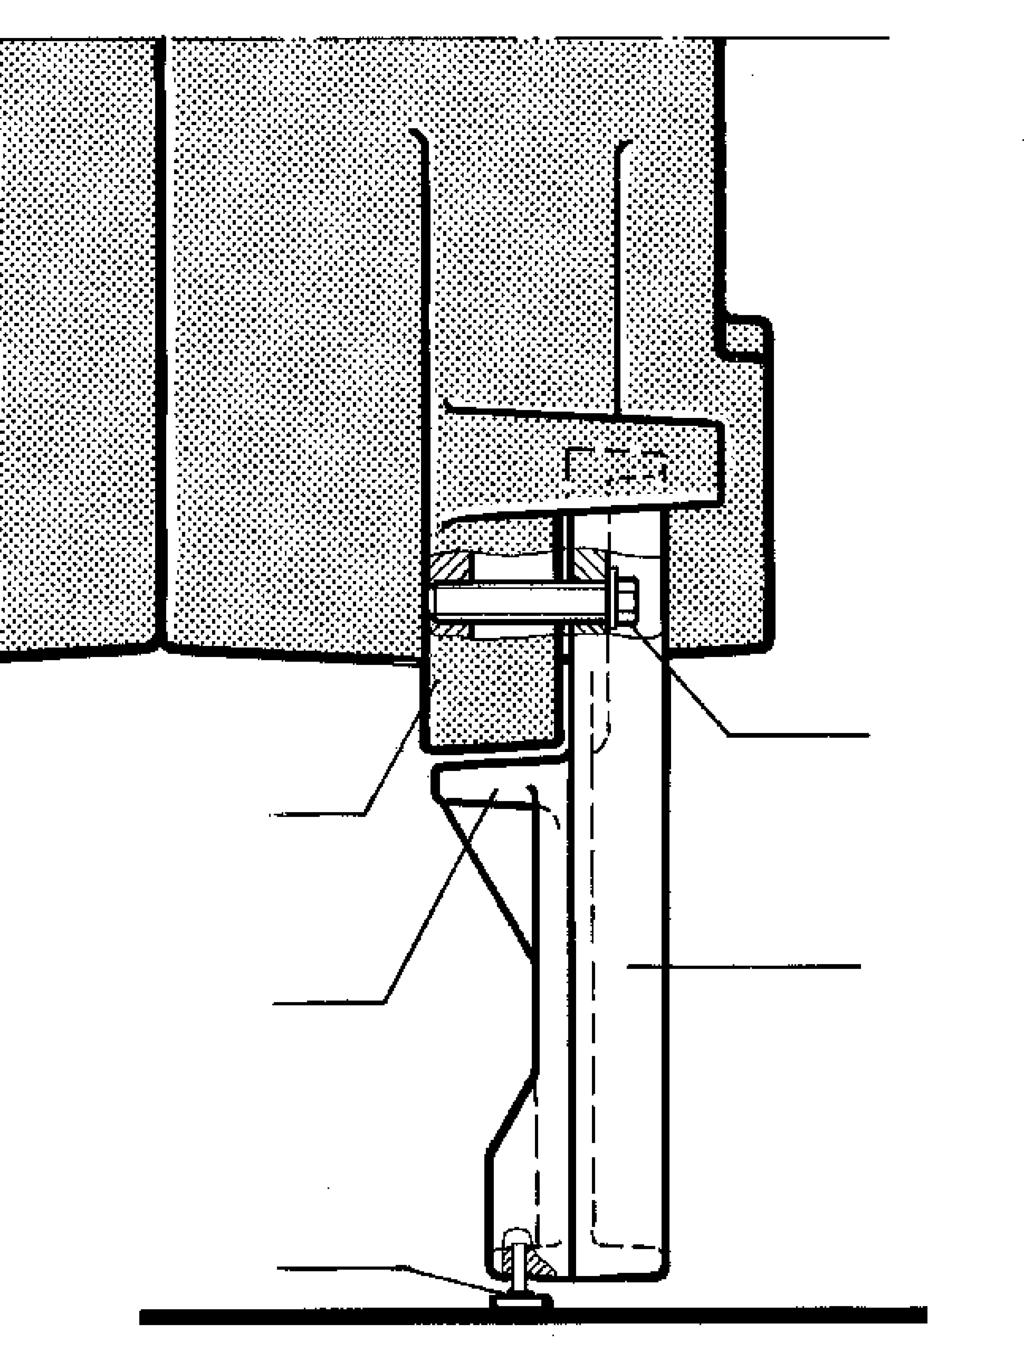 Ohne Kesselkuli Kessel leicht nach hinten kippen. Kessel so abstützen und gegen Verrutschen sichern, daß die vier Fußschrauben gefahrlos in die Winkelschienen (Abb. 4) eingeschraubt werden können.